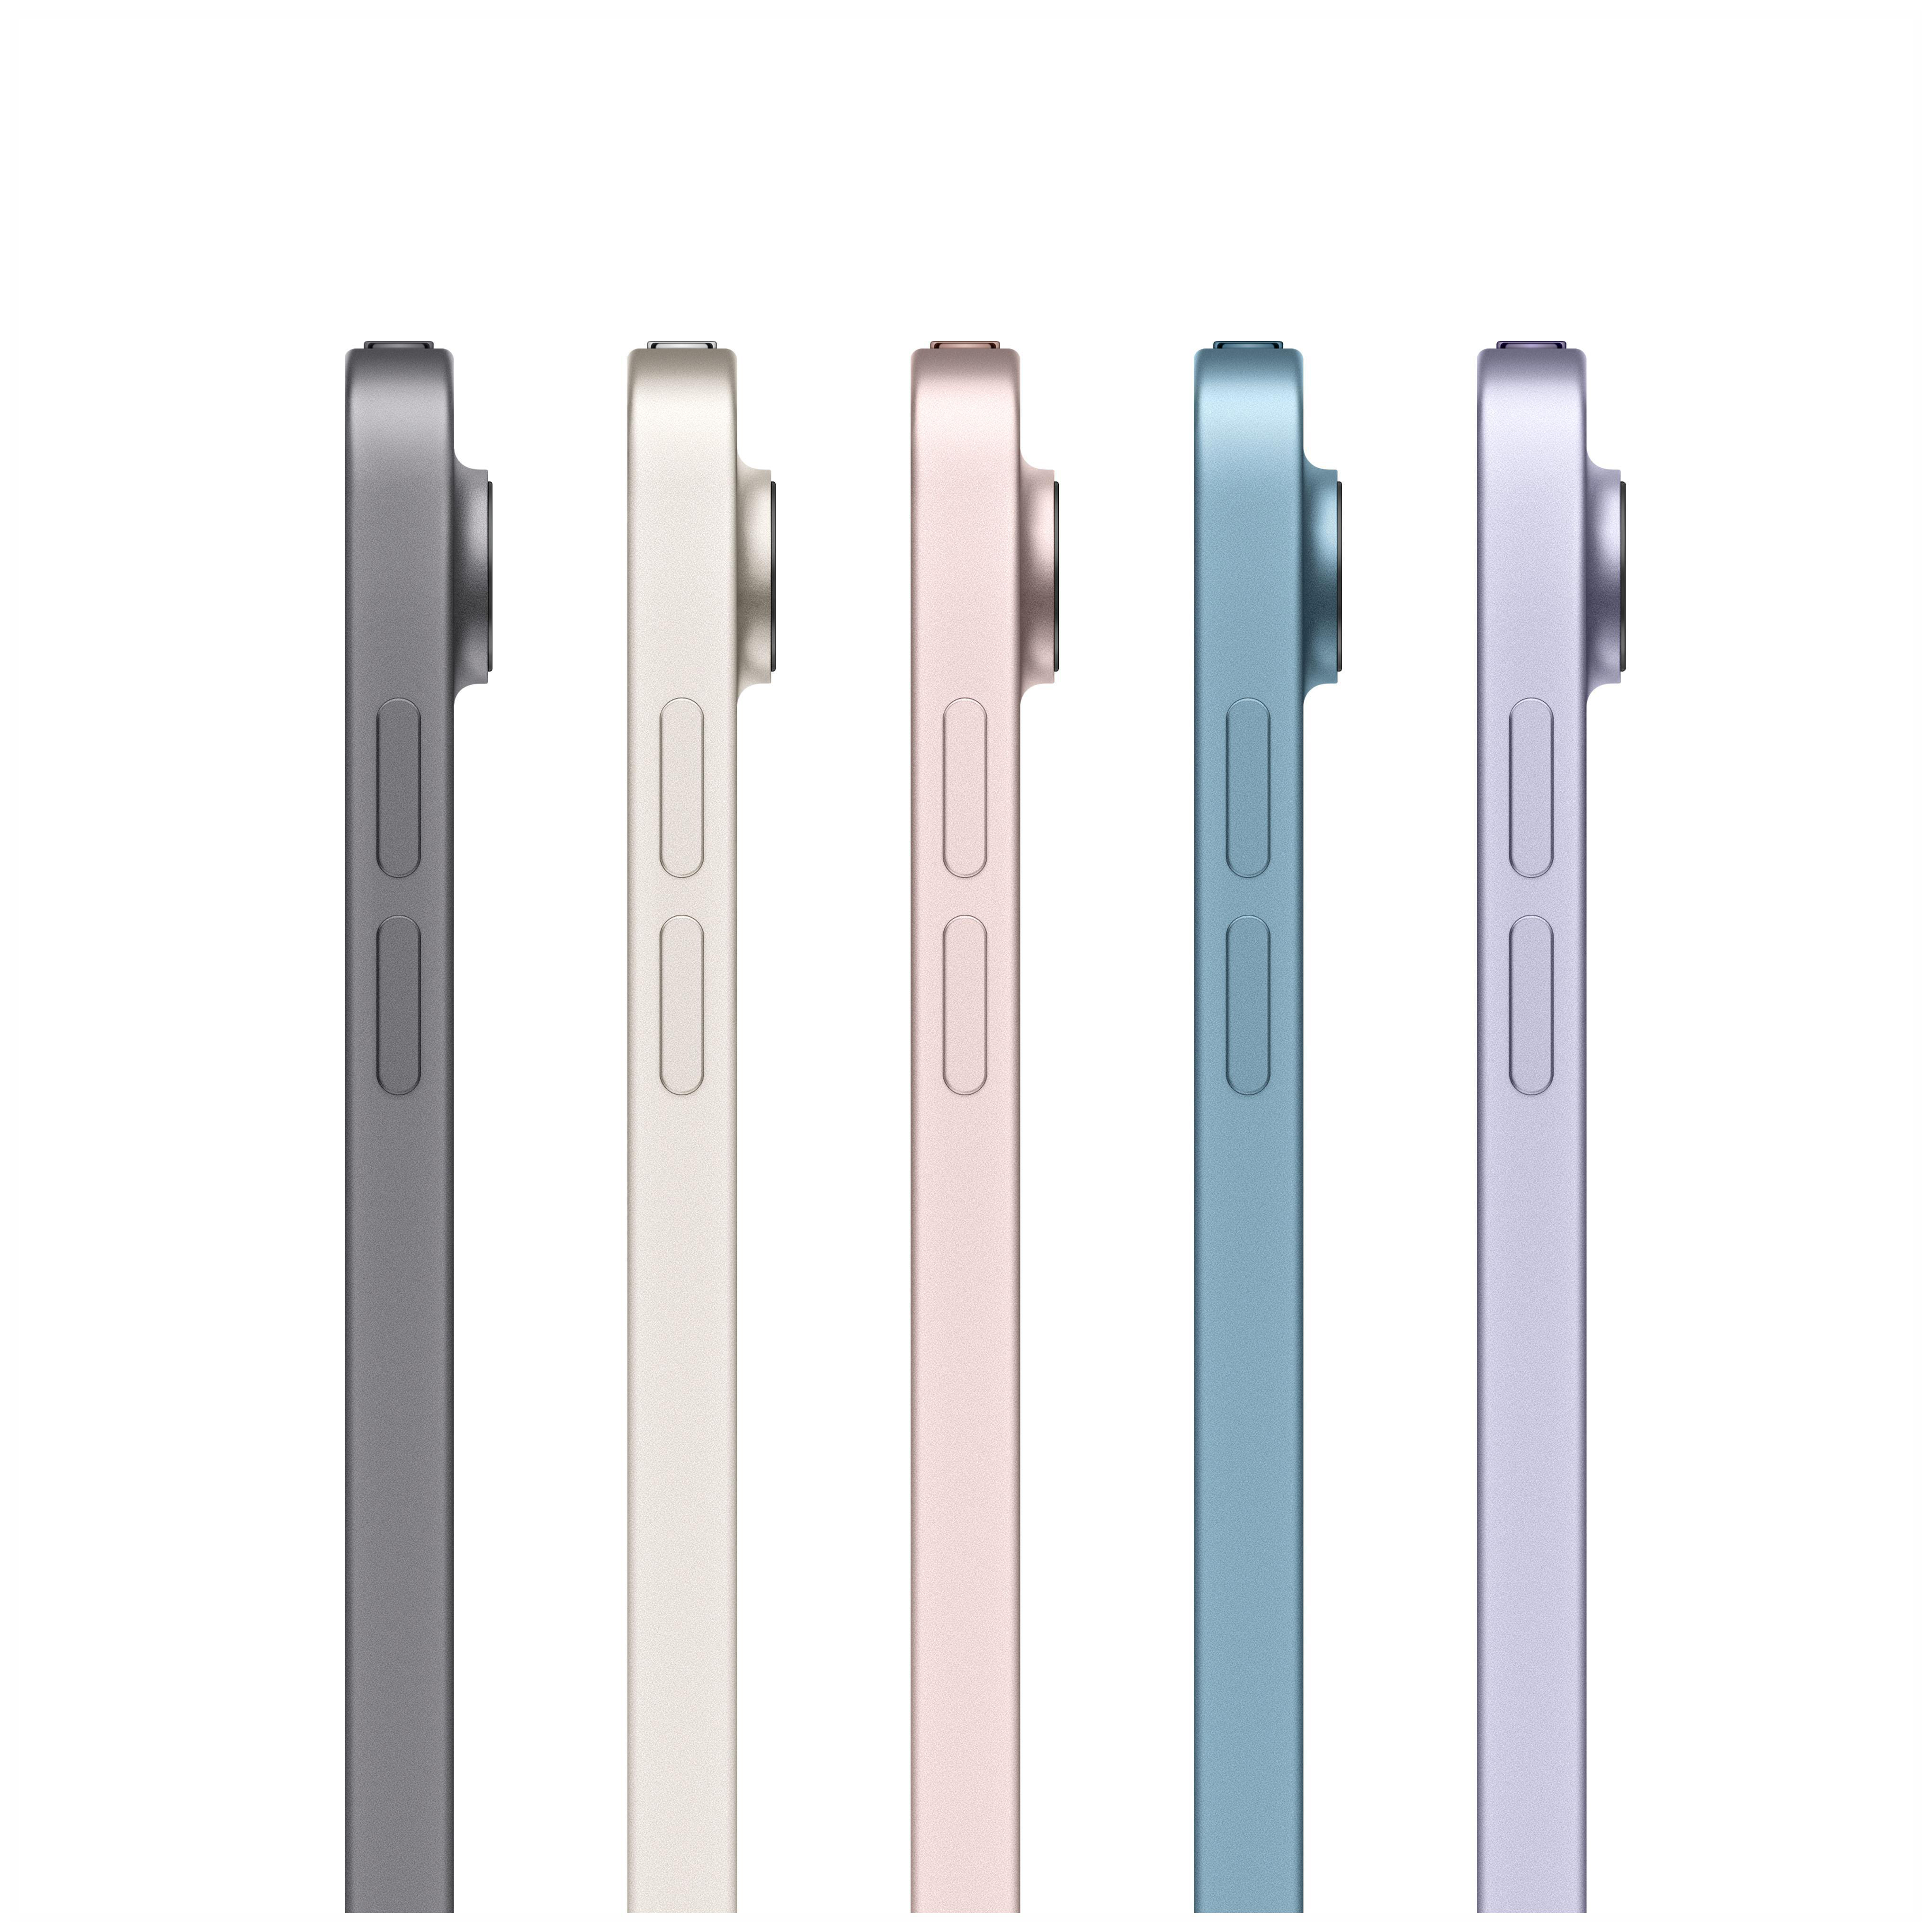 APPLE iPad Air Wi-Fi (2022) 64 Zoll, GB, Generation, 10,9 Tablet, 5. Violett